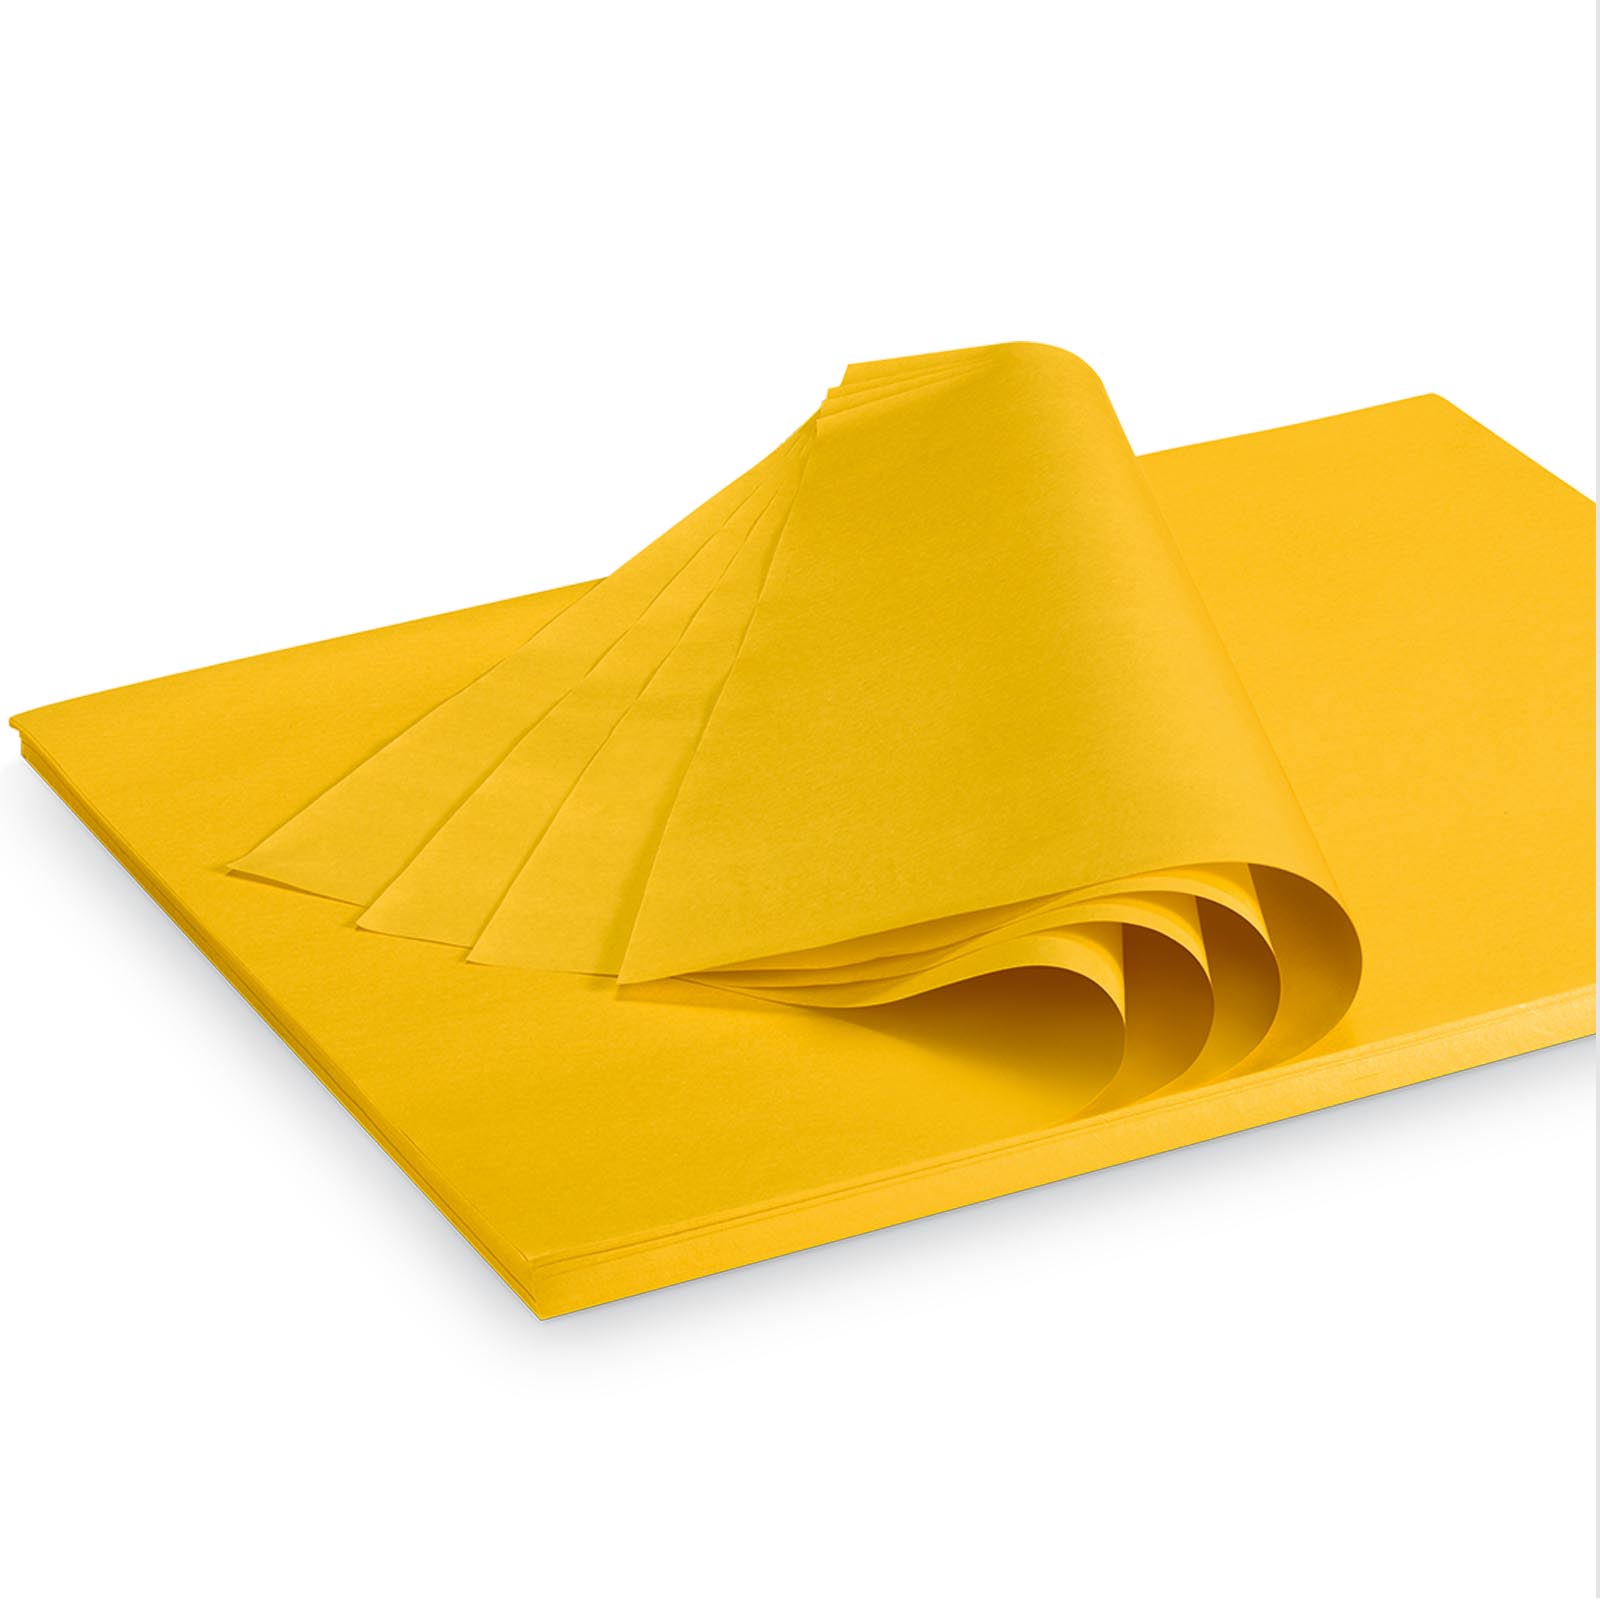 Seidenpapier Gelb 35g/qm 500x375mm 2 kg/ ca.300 Blatt